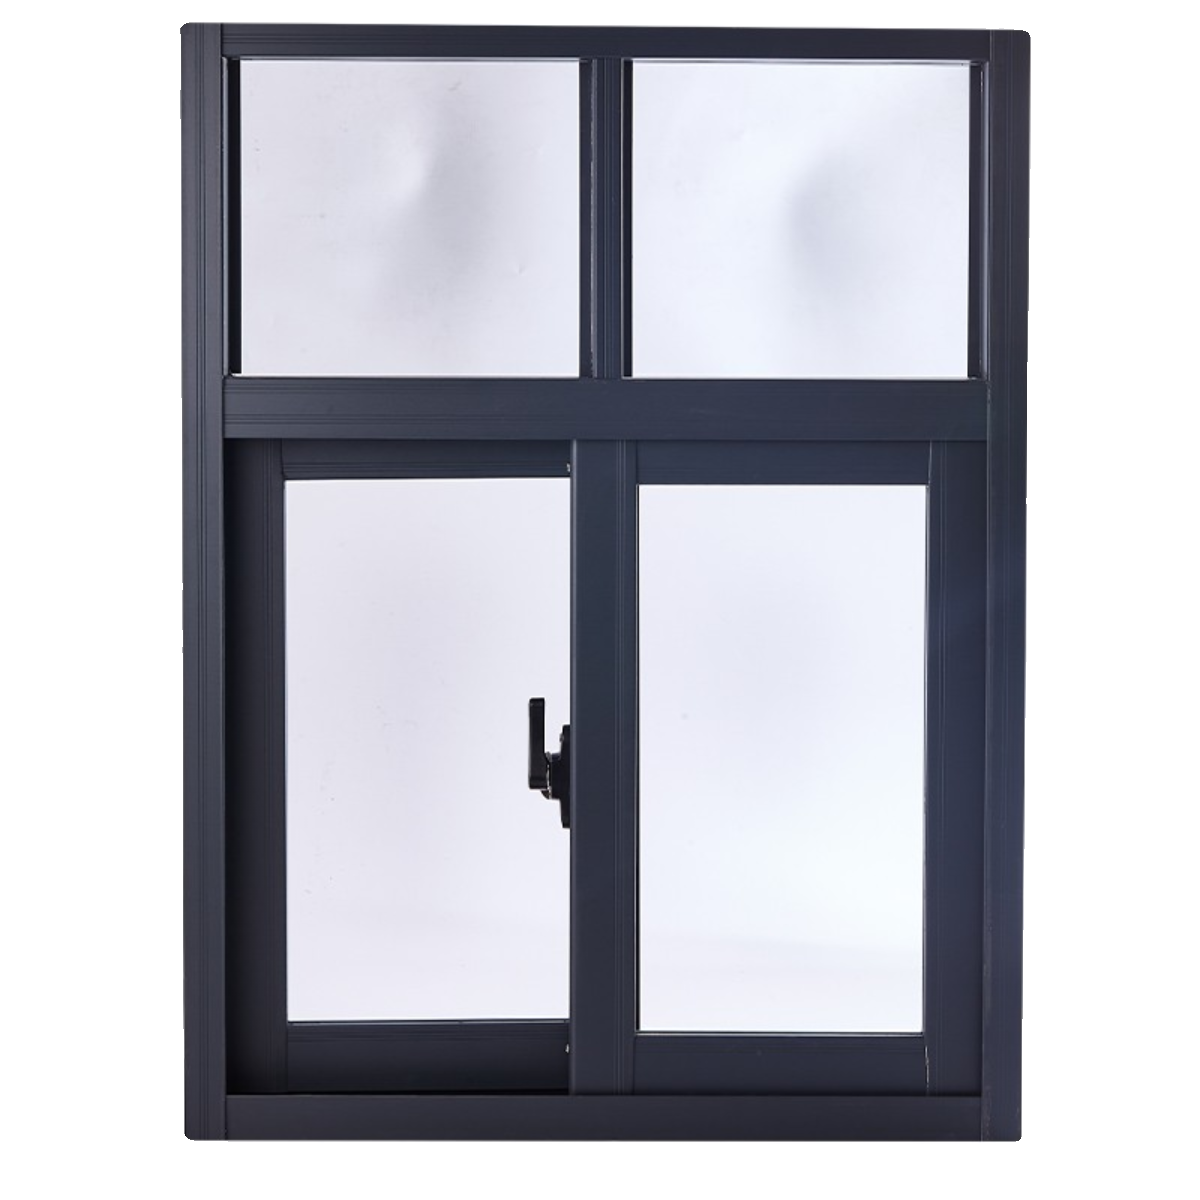 铝合金推拉窗农村定制左右简易小通风窗厕所窗厨房窗平移窗玻璃窗-图3